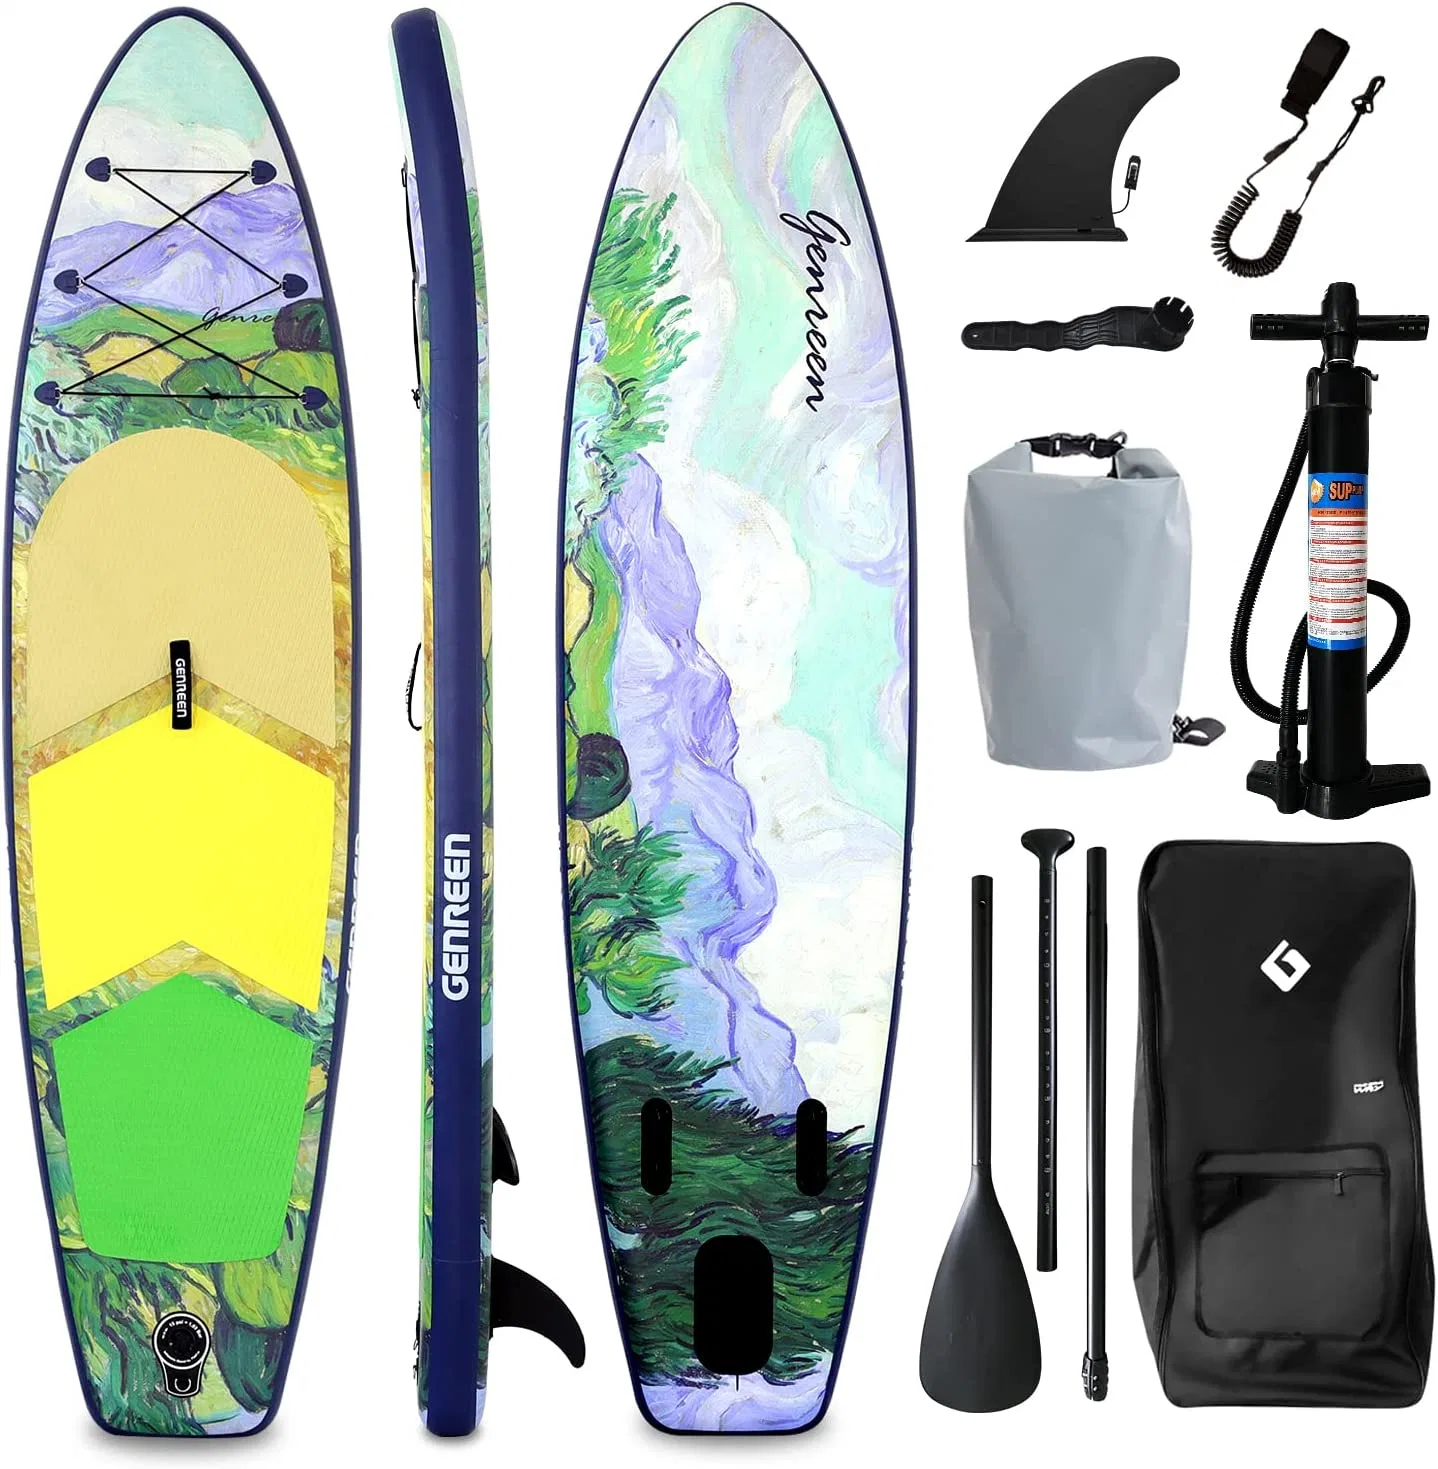 Bolsa inflable de Stand Up Paddle Board Non-Slip Premium Deck con accesorios de Sup perfecto para los jóvenes adultos principiantes